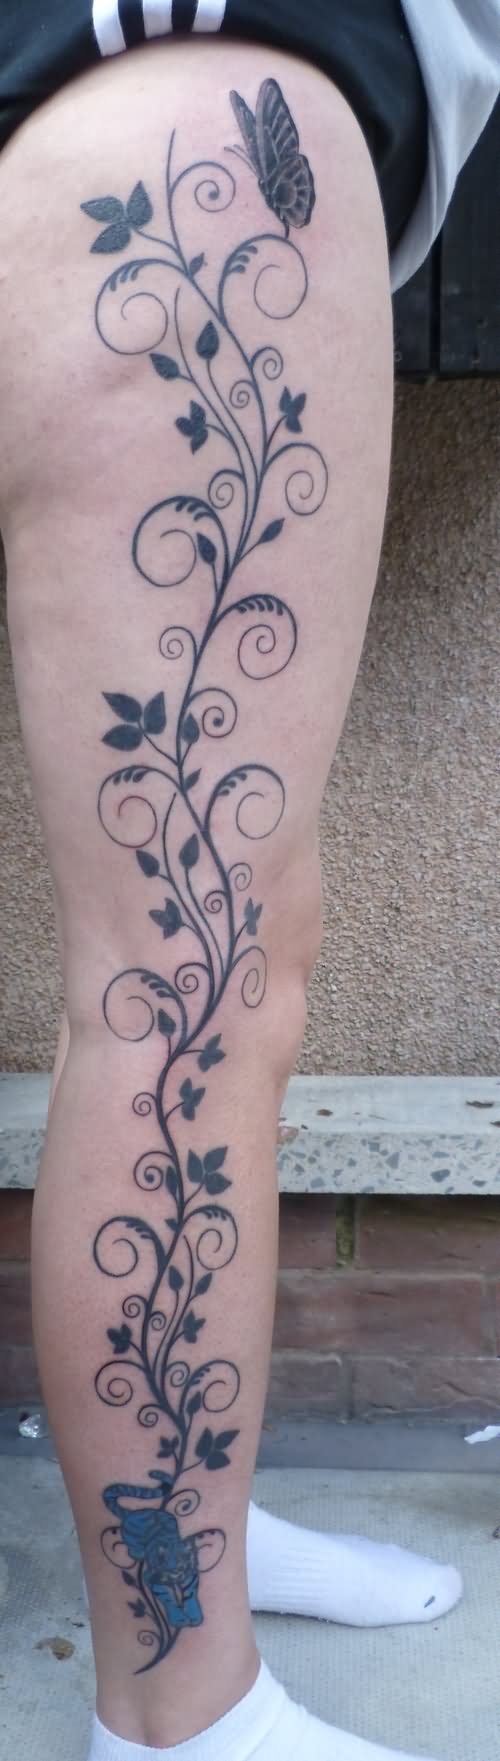 Black Leaves Vine Tattoo On Right Leg